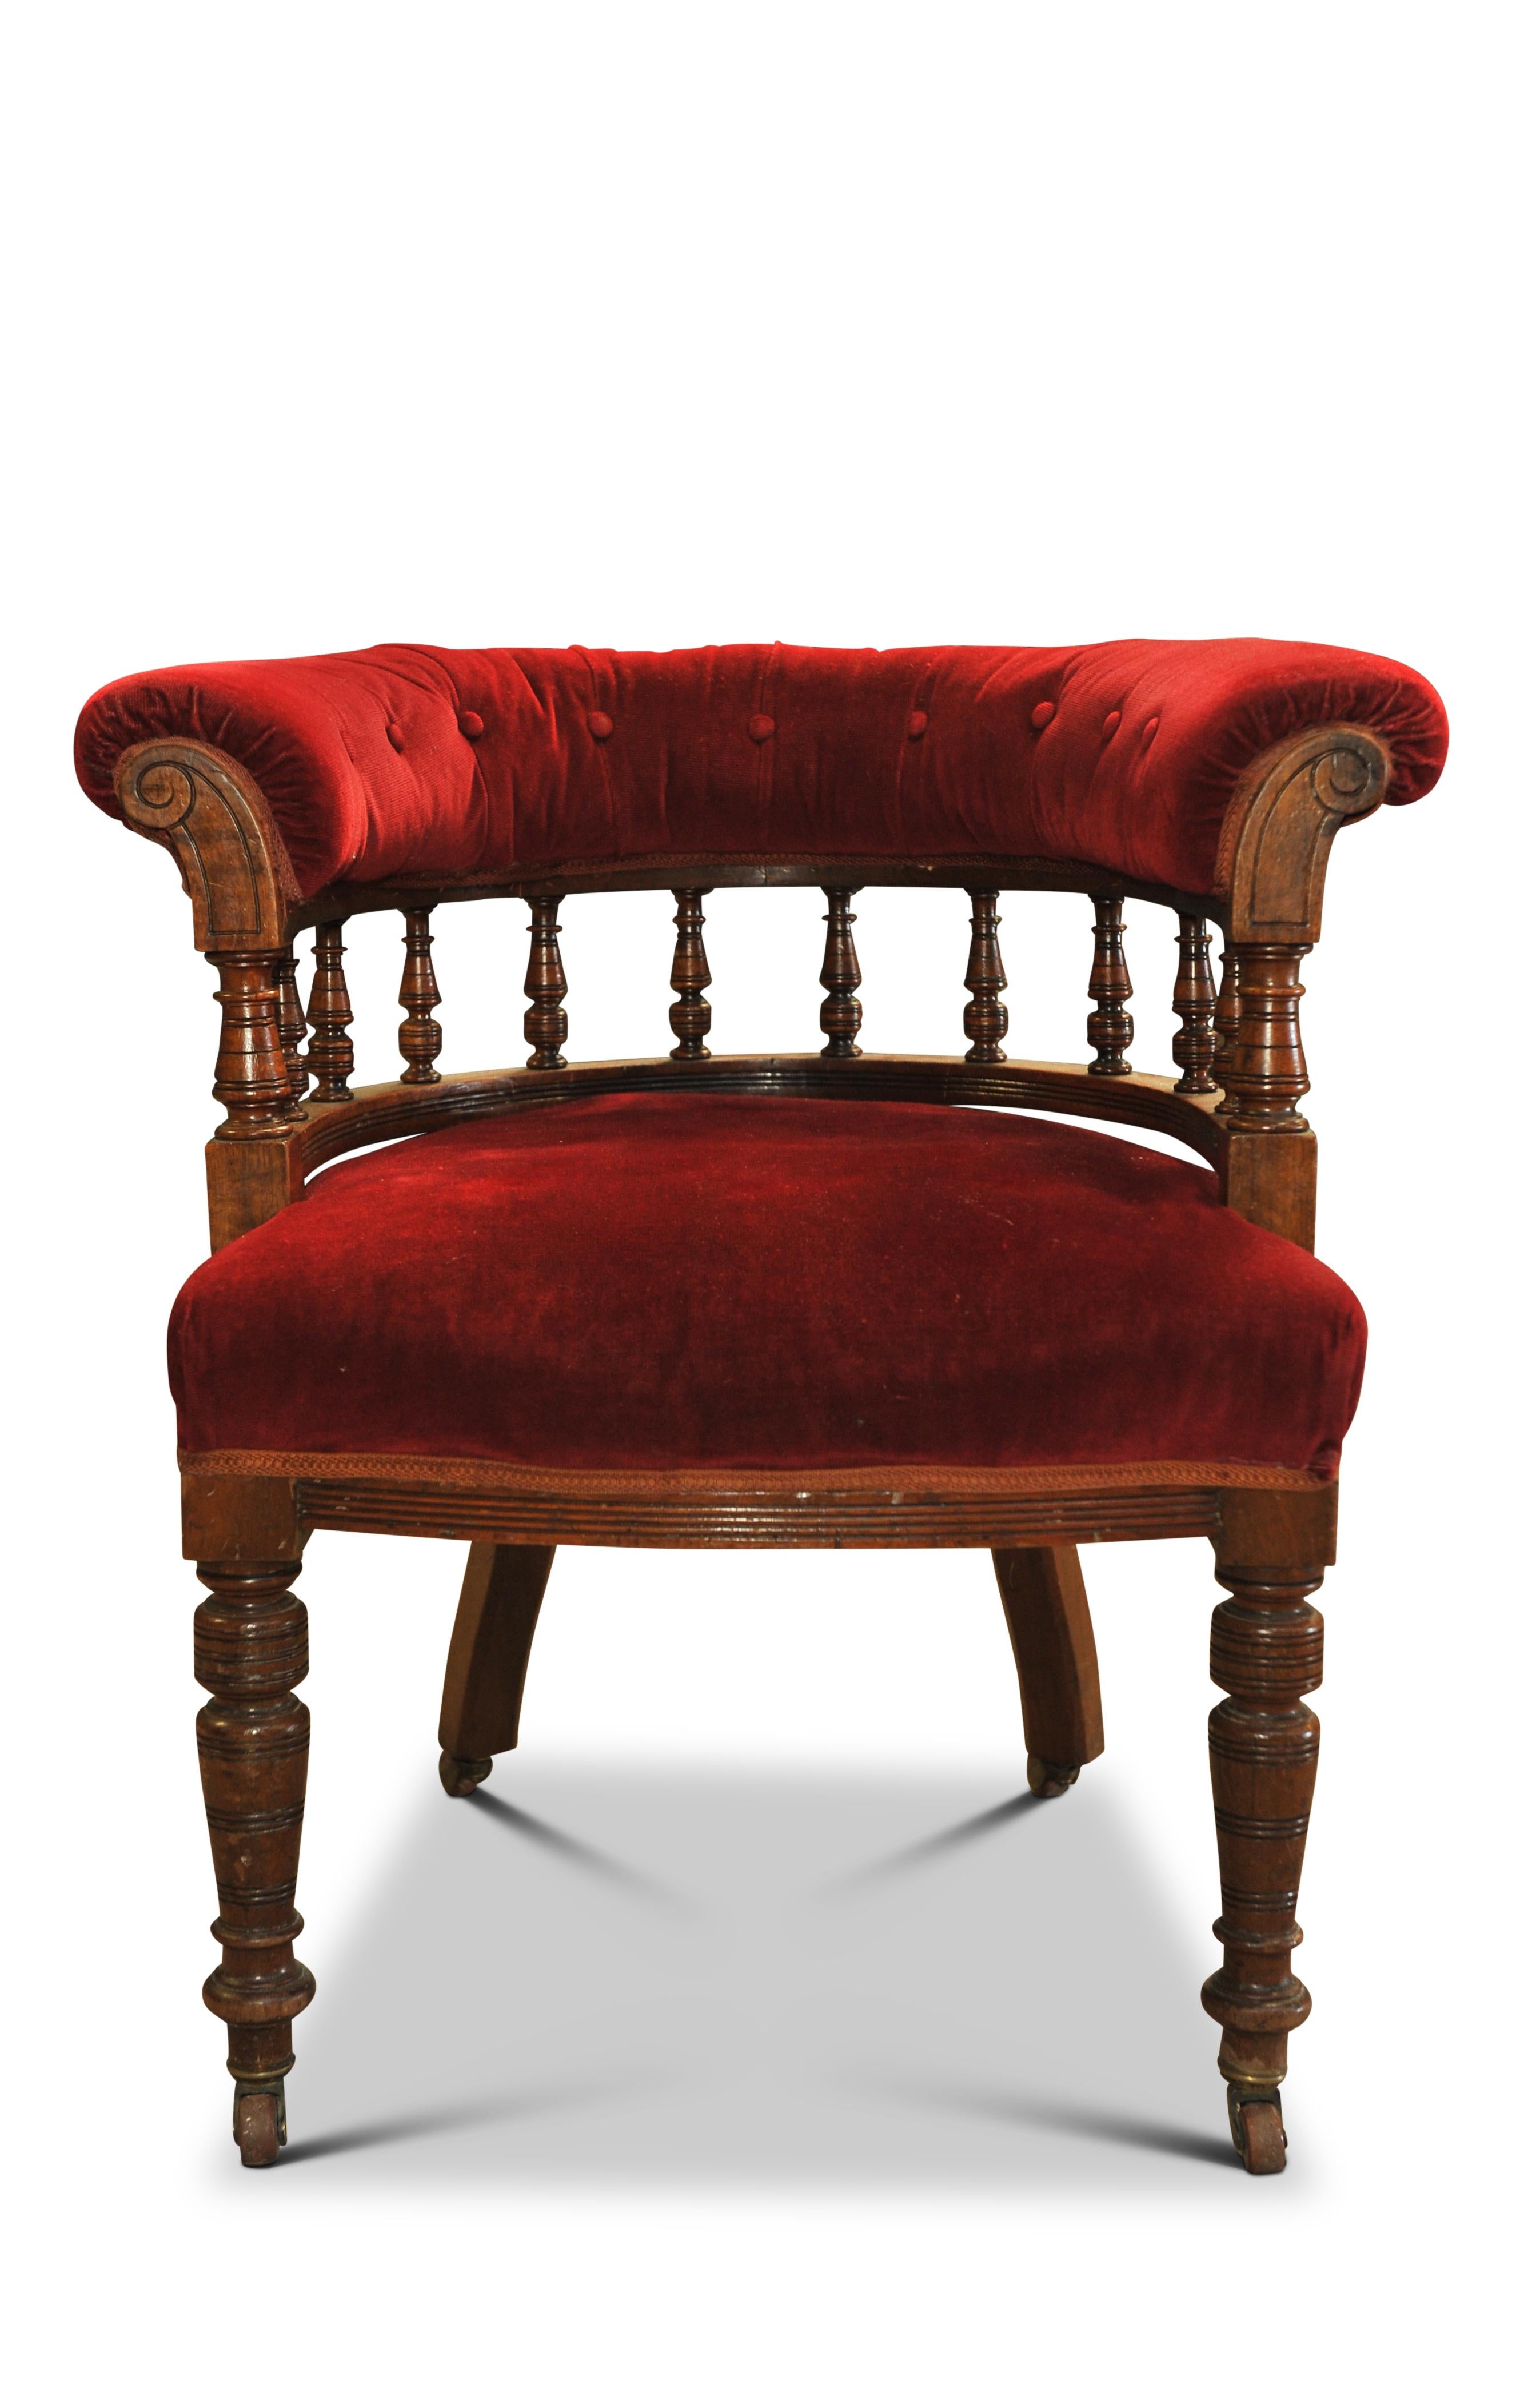 Chesterfield en velours rouge du XIXe siècle Chaise de capitaine en velours rouge avec roulettes en porcelaine

Chaise lourde fabriquée à la main avec assise rembourrée en crin de cheval. 

Dimensions supplémentaires 

Hauteur au sommet des bras